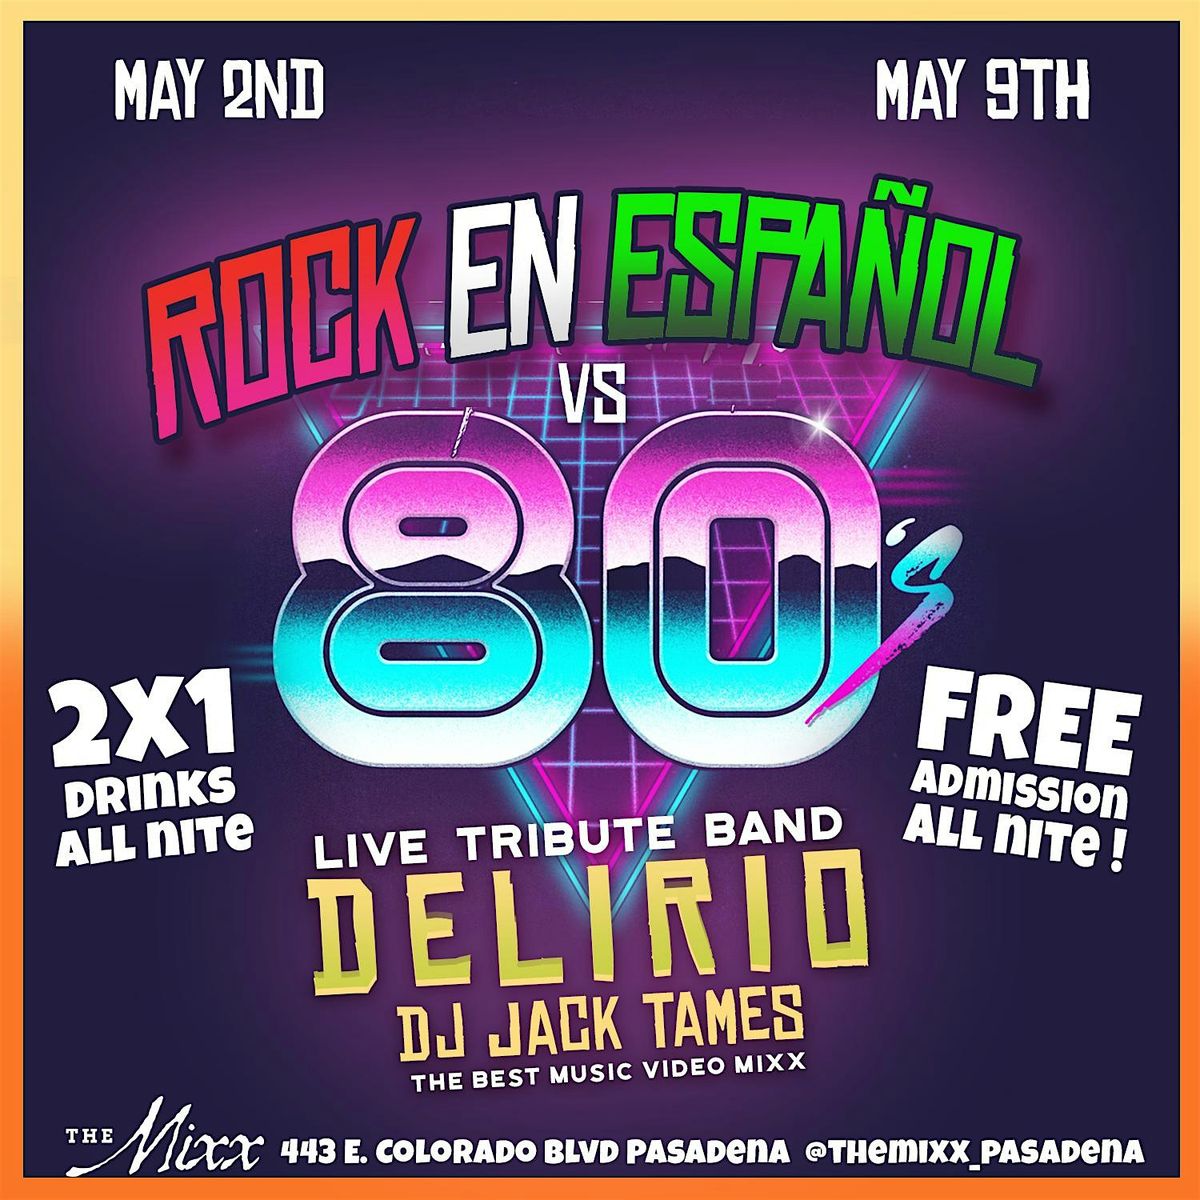 80's vs Rock En Espa\u00f1ol  FREE Live Show and Dance Party